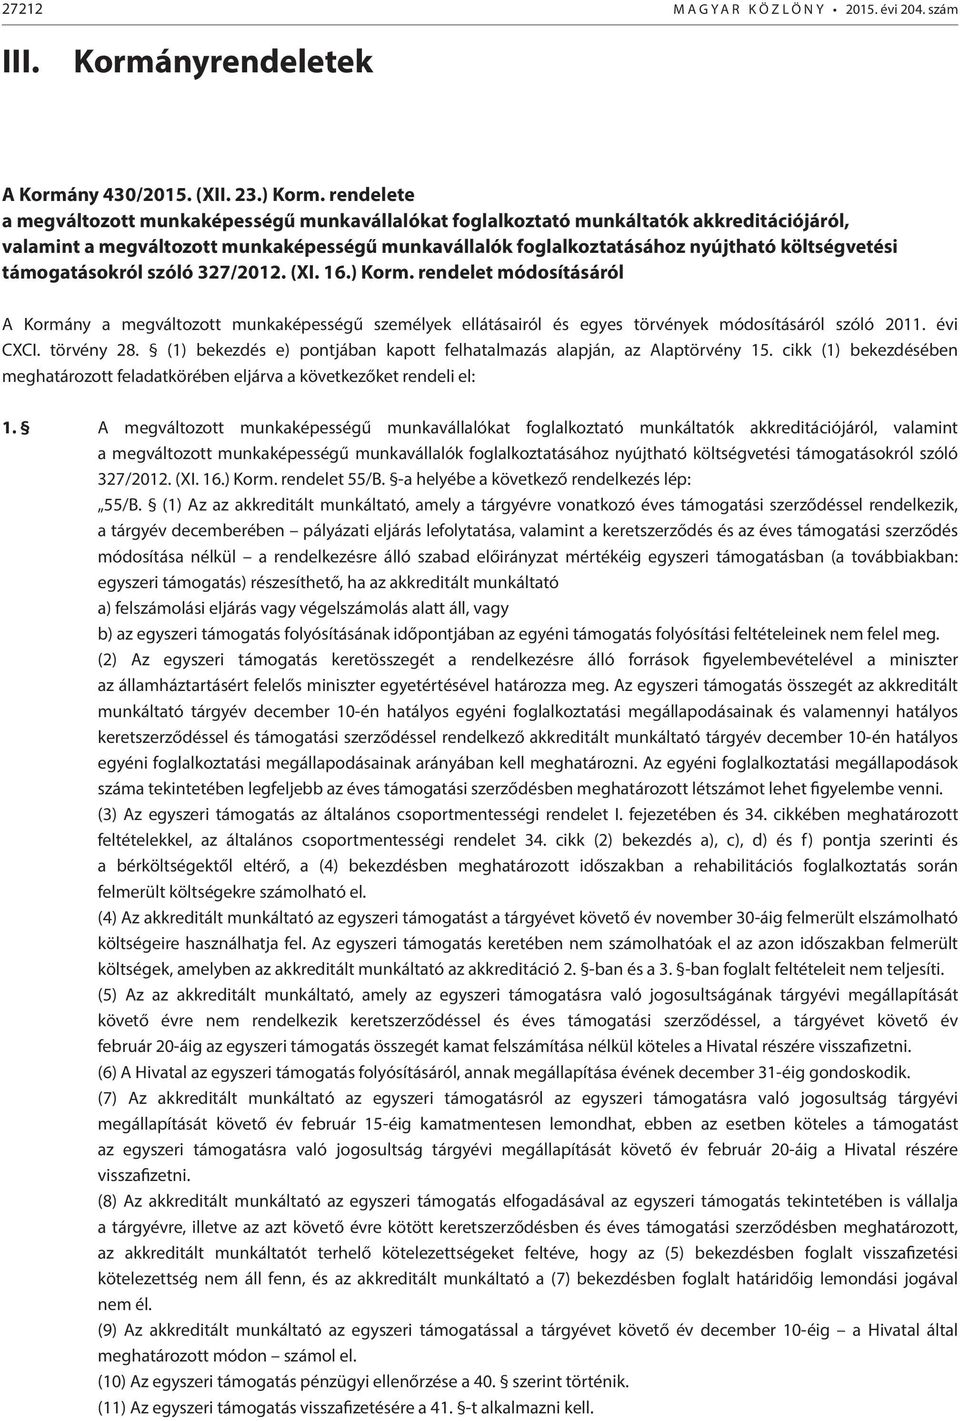 támogatásokról szóló 327/2012. (XI. 16.) Korm. rendelet módosításáról A Kormány a megváltozott munkaképességű személyek ellátásairól és egyes törvények módosításáról szóló 2011. évi CXCI. törvény 28.